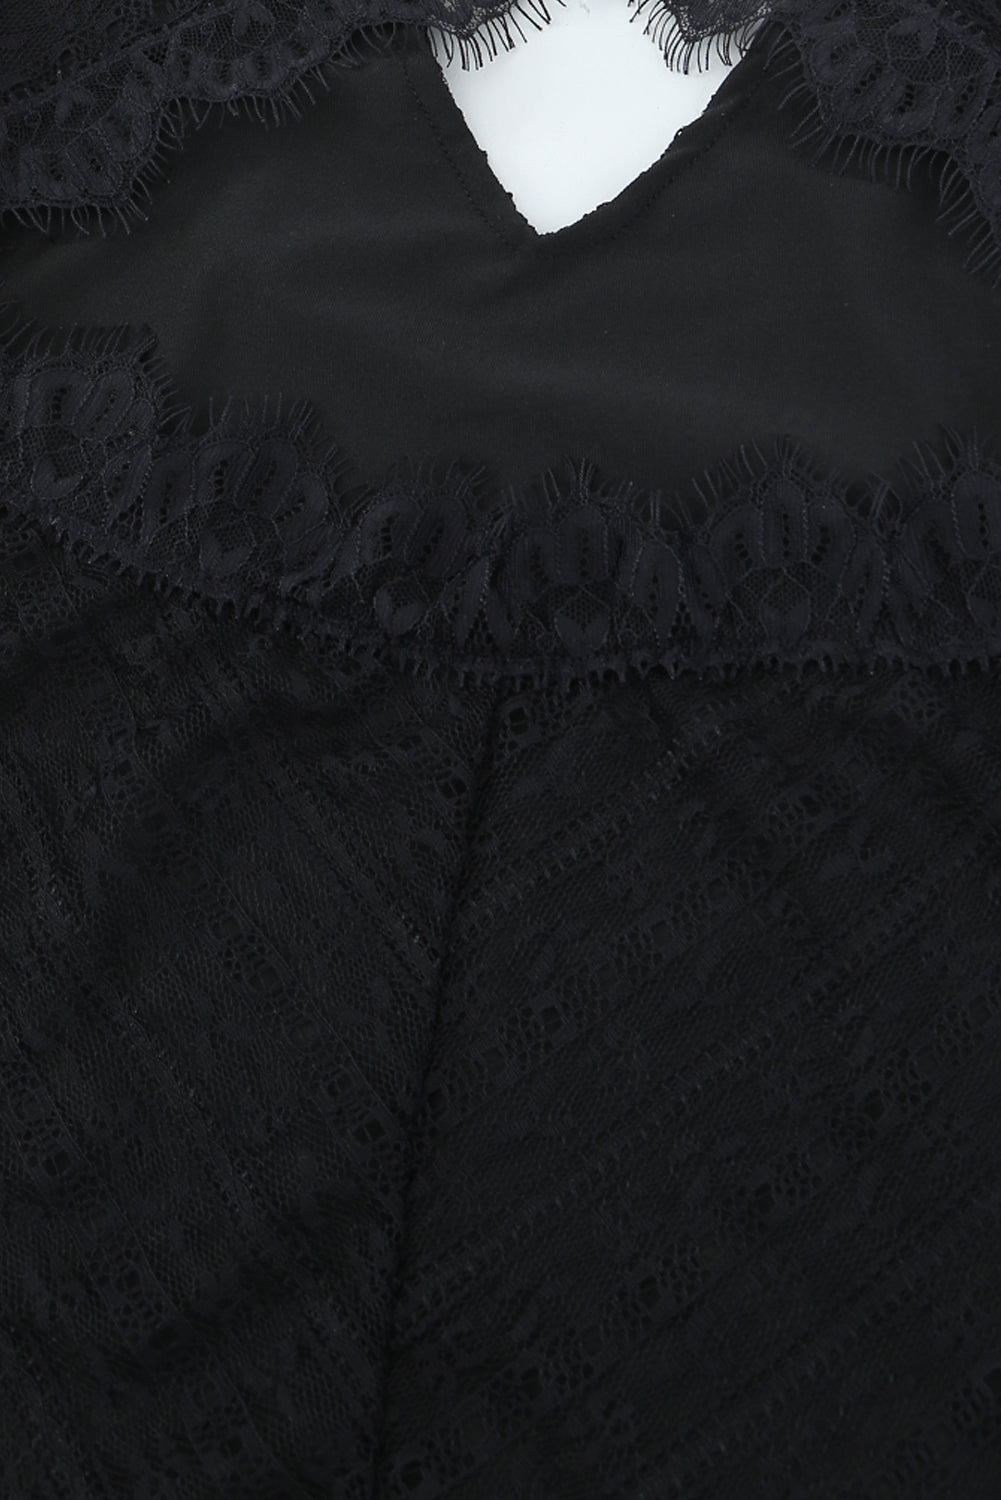 Black Lace Cut-out Deep V Neck Bodysuit Bodysuits JT's Designer Fashion